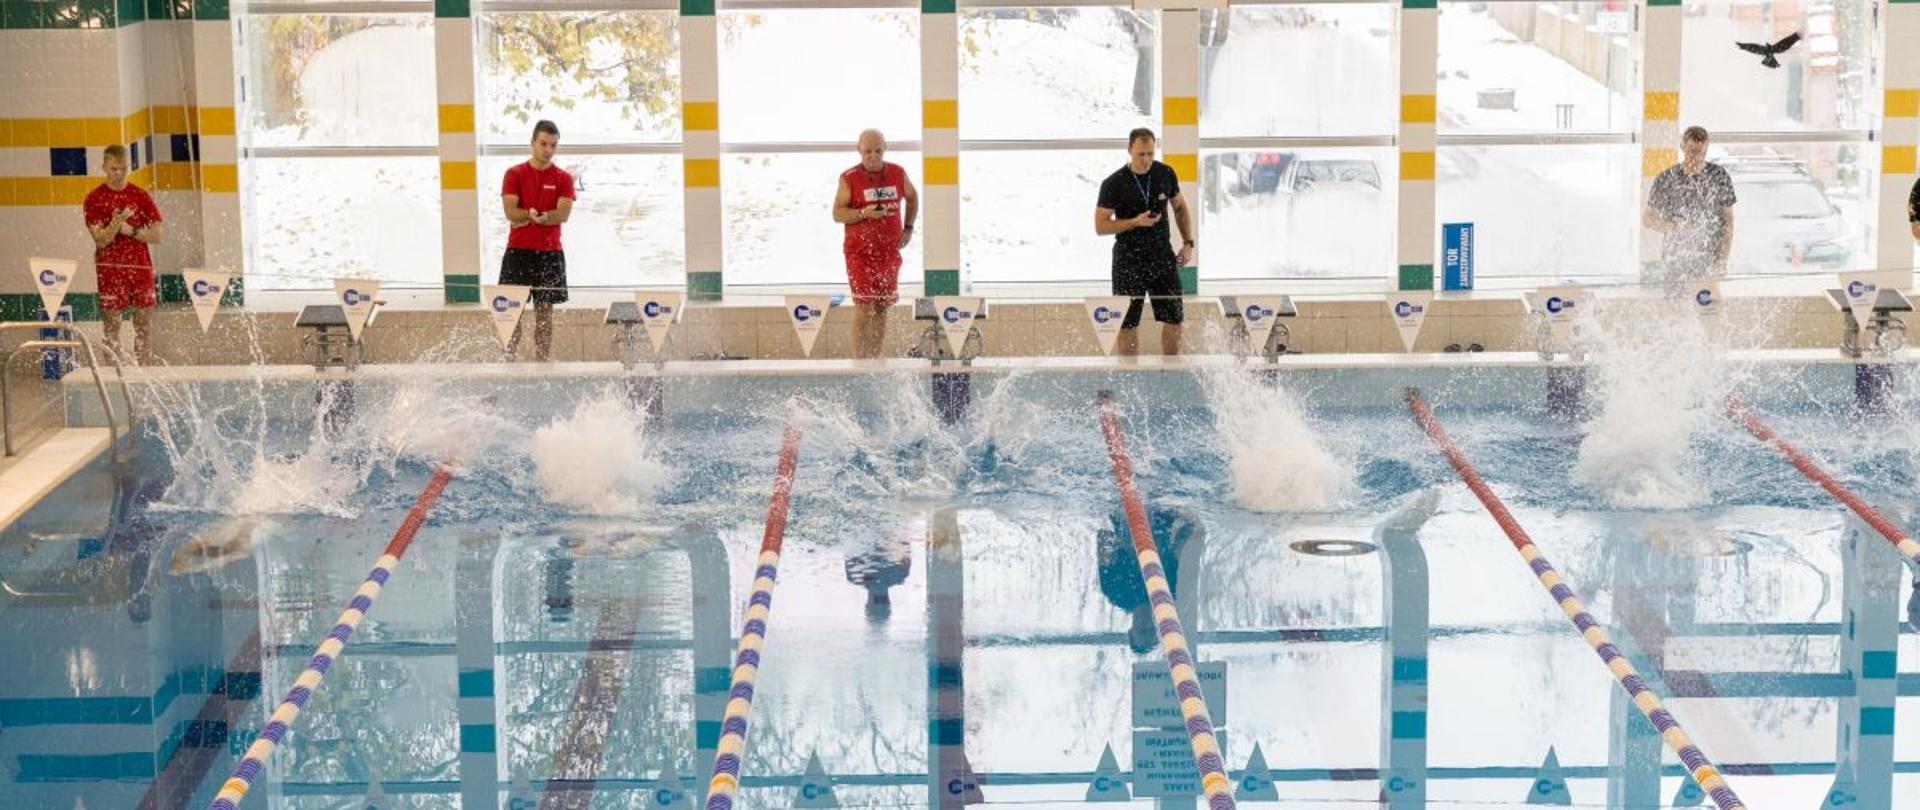 Zawodnicy, strażacy Państwowej Straży Pożarnej w strojach kąpielowych, po skoku do wody rywalizują w zawodach pływackich o puchar Opolskiego Komendanta Wojewódzkiego Państwowej Straży Pożarnej. W tle sędziowie zawodów.